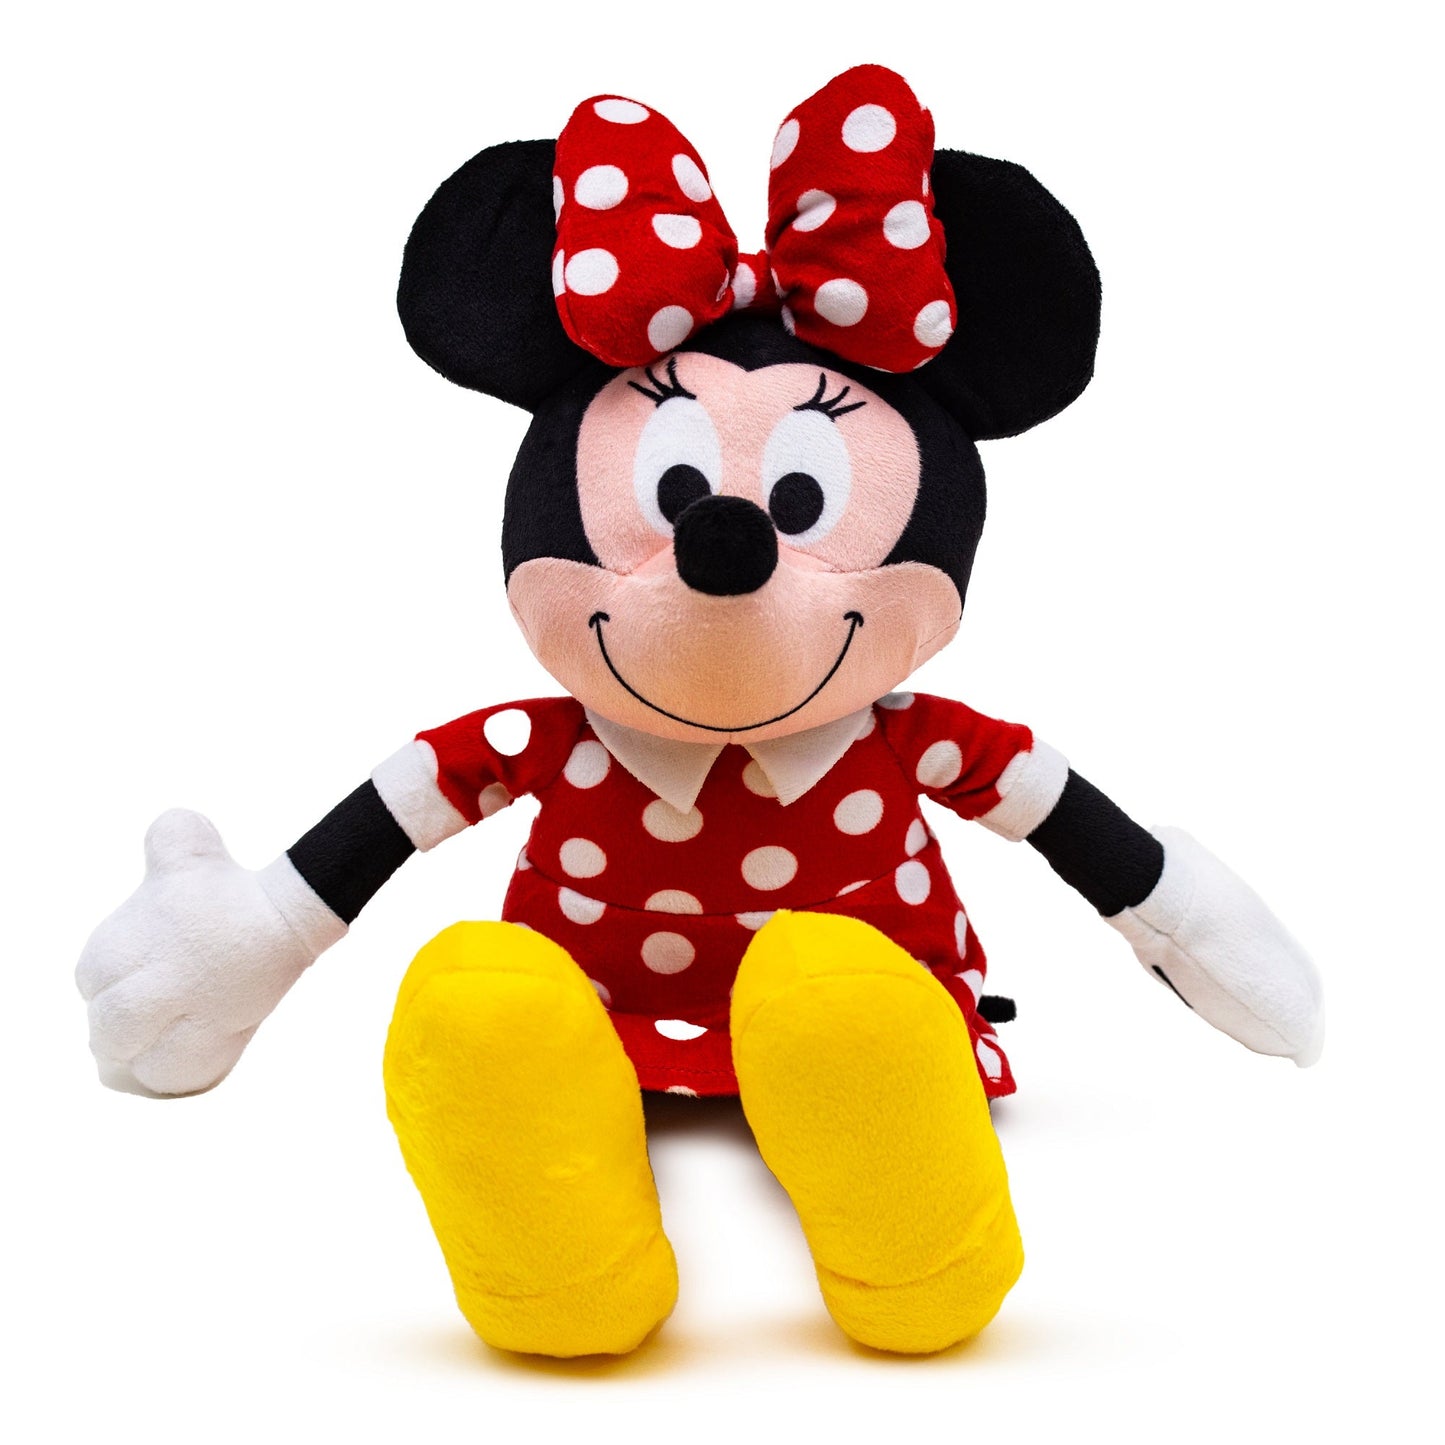 Peluche con chirriador para perro, pose sonriente sentada de Minnie Mouse de Disney